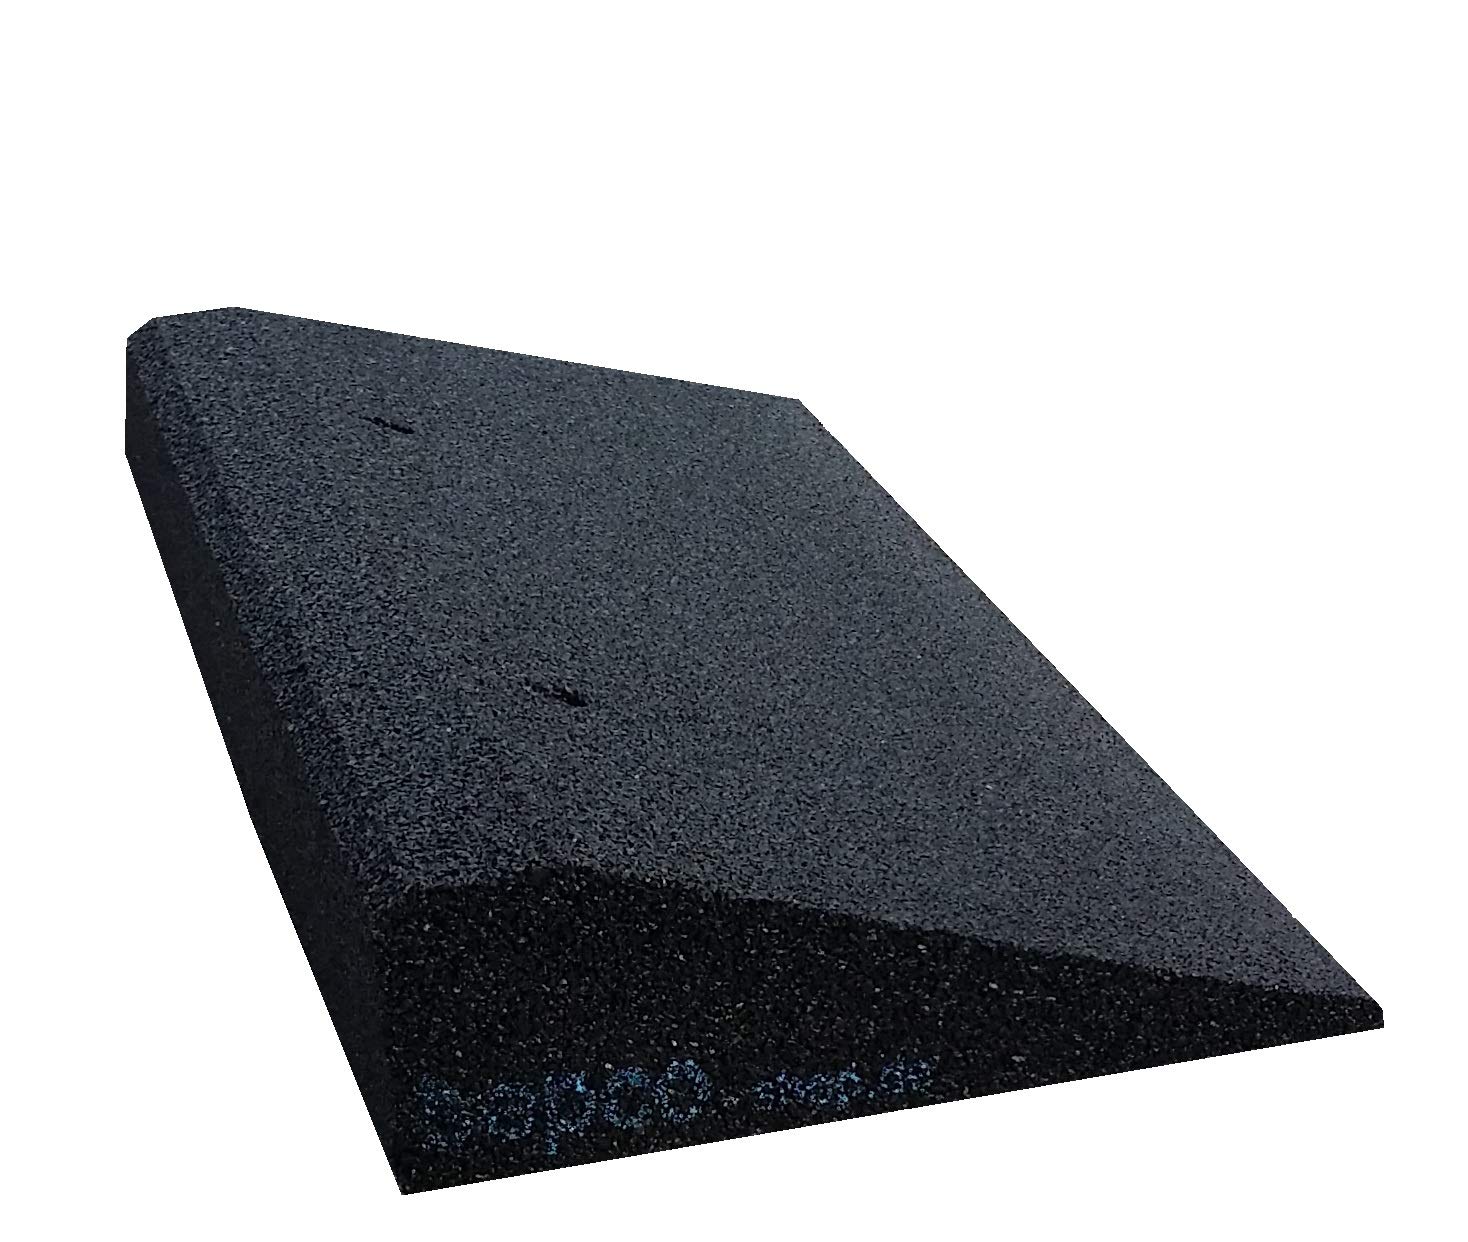 bepco Bordsteinkanten-Rampe, LxBxH: 50 x 25 x 4 cm aus Gummi (schwarz) Auffahrrampe,Türschwellenrampe, mit eingelagerten Unterlegscheiben zur Befestigung